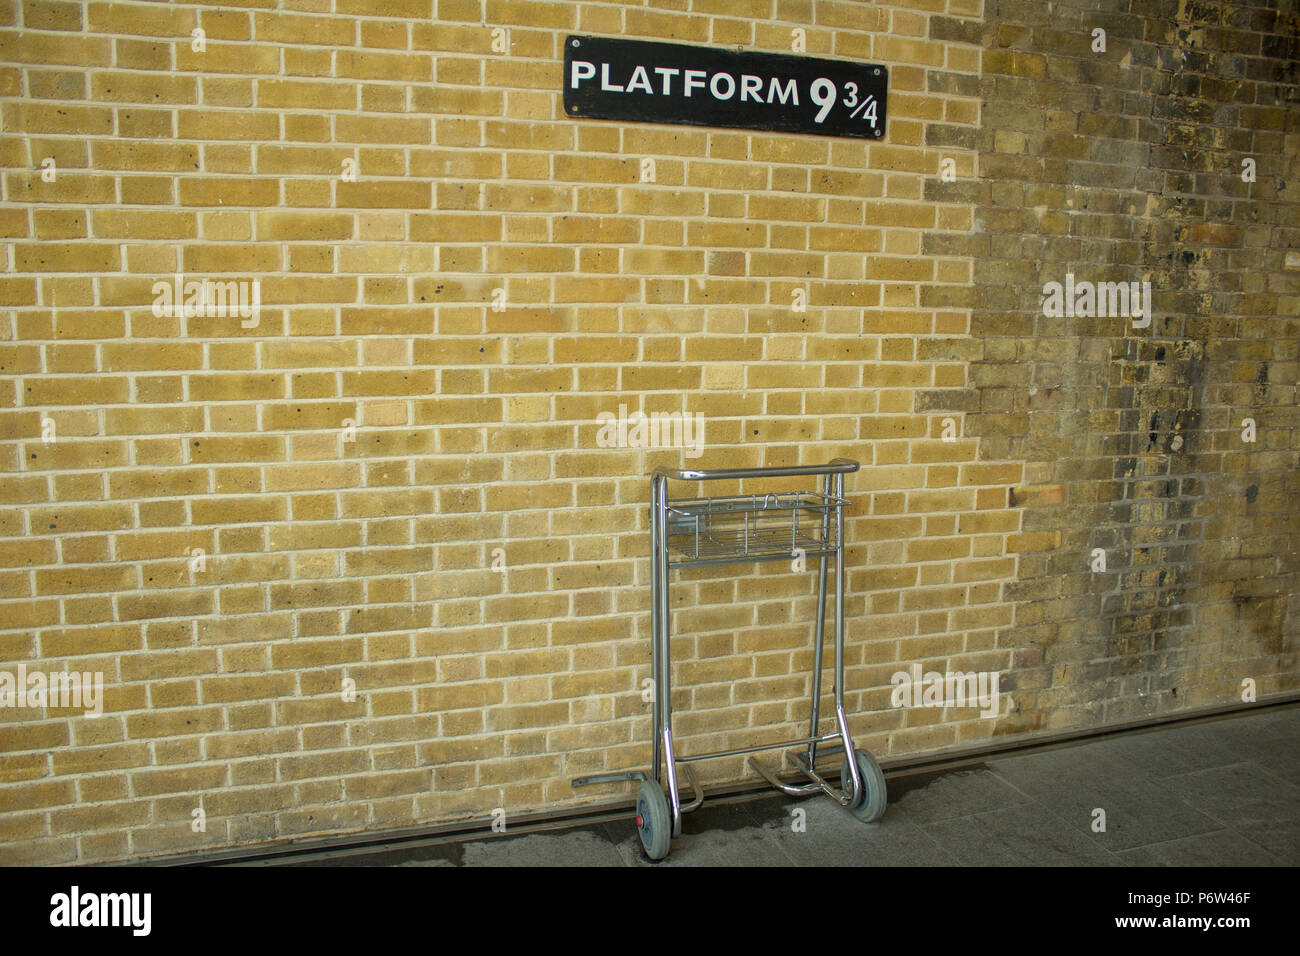 La plate-forme de Harry Potter 9 3/4 à la gare de Euston, Londres Banque D'Images